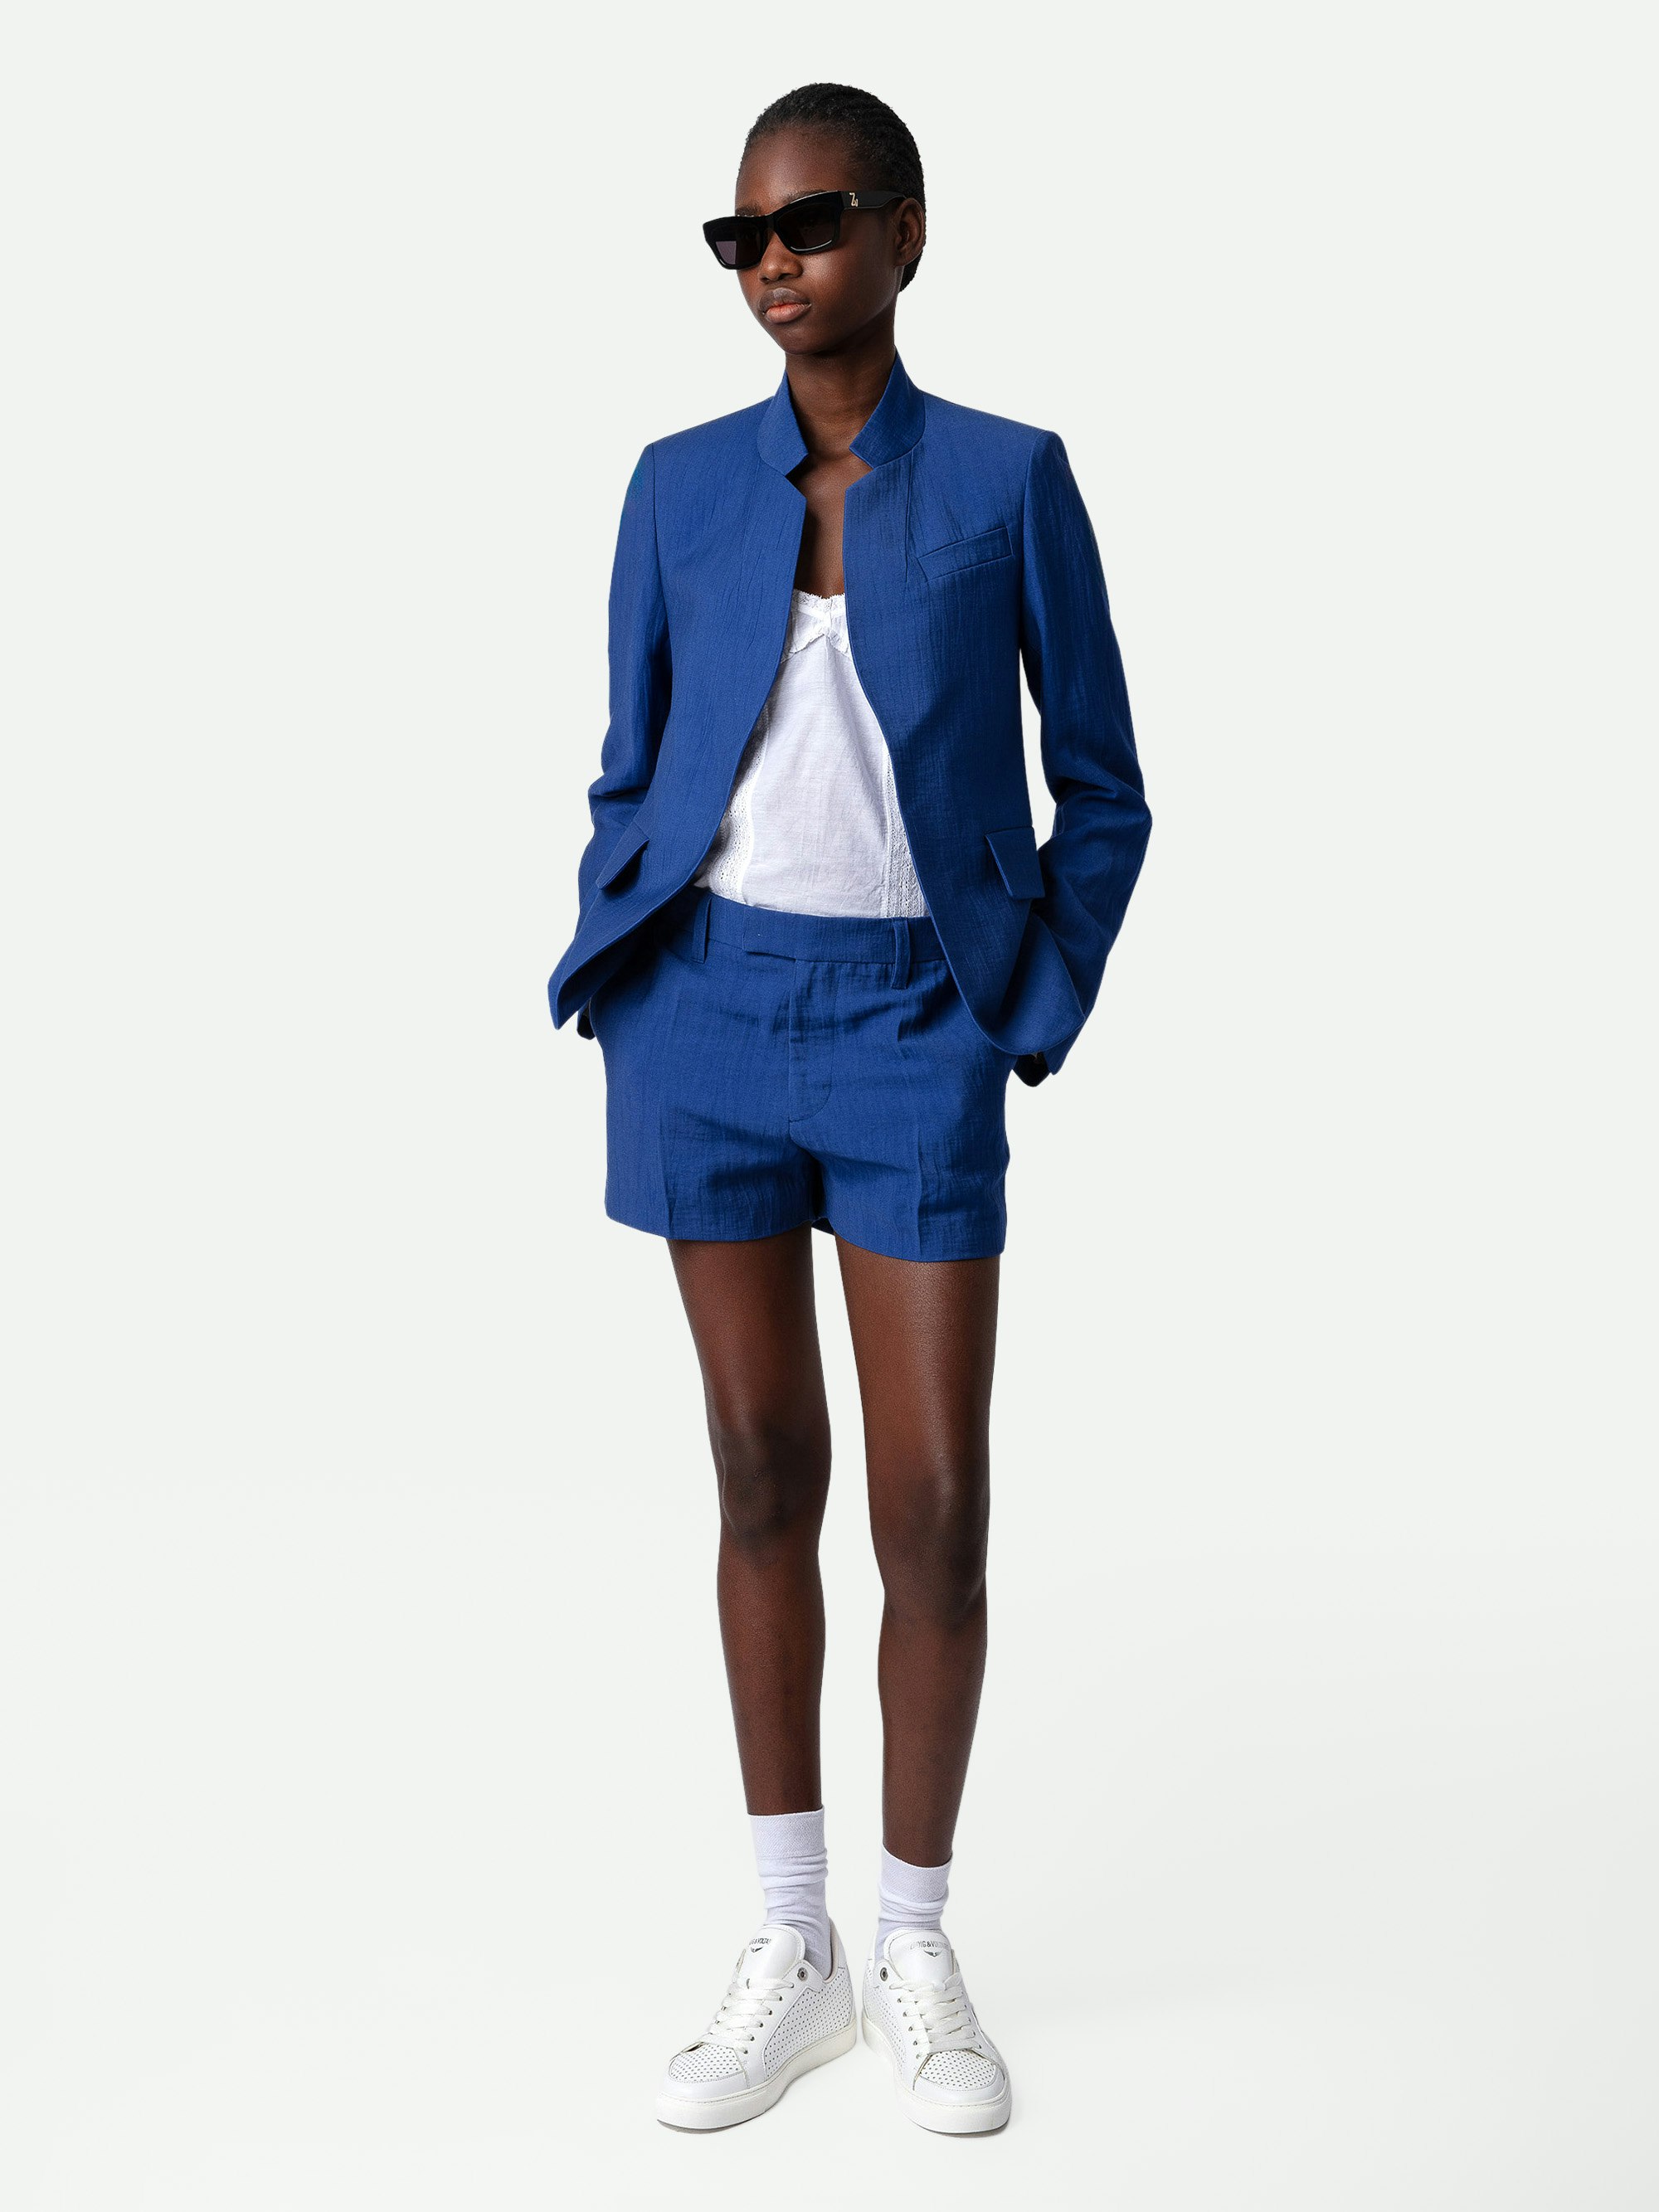 Shorts Please Lino - Shorts sartoriali in lino blu con tasche.